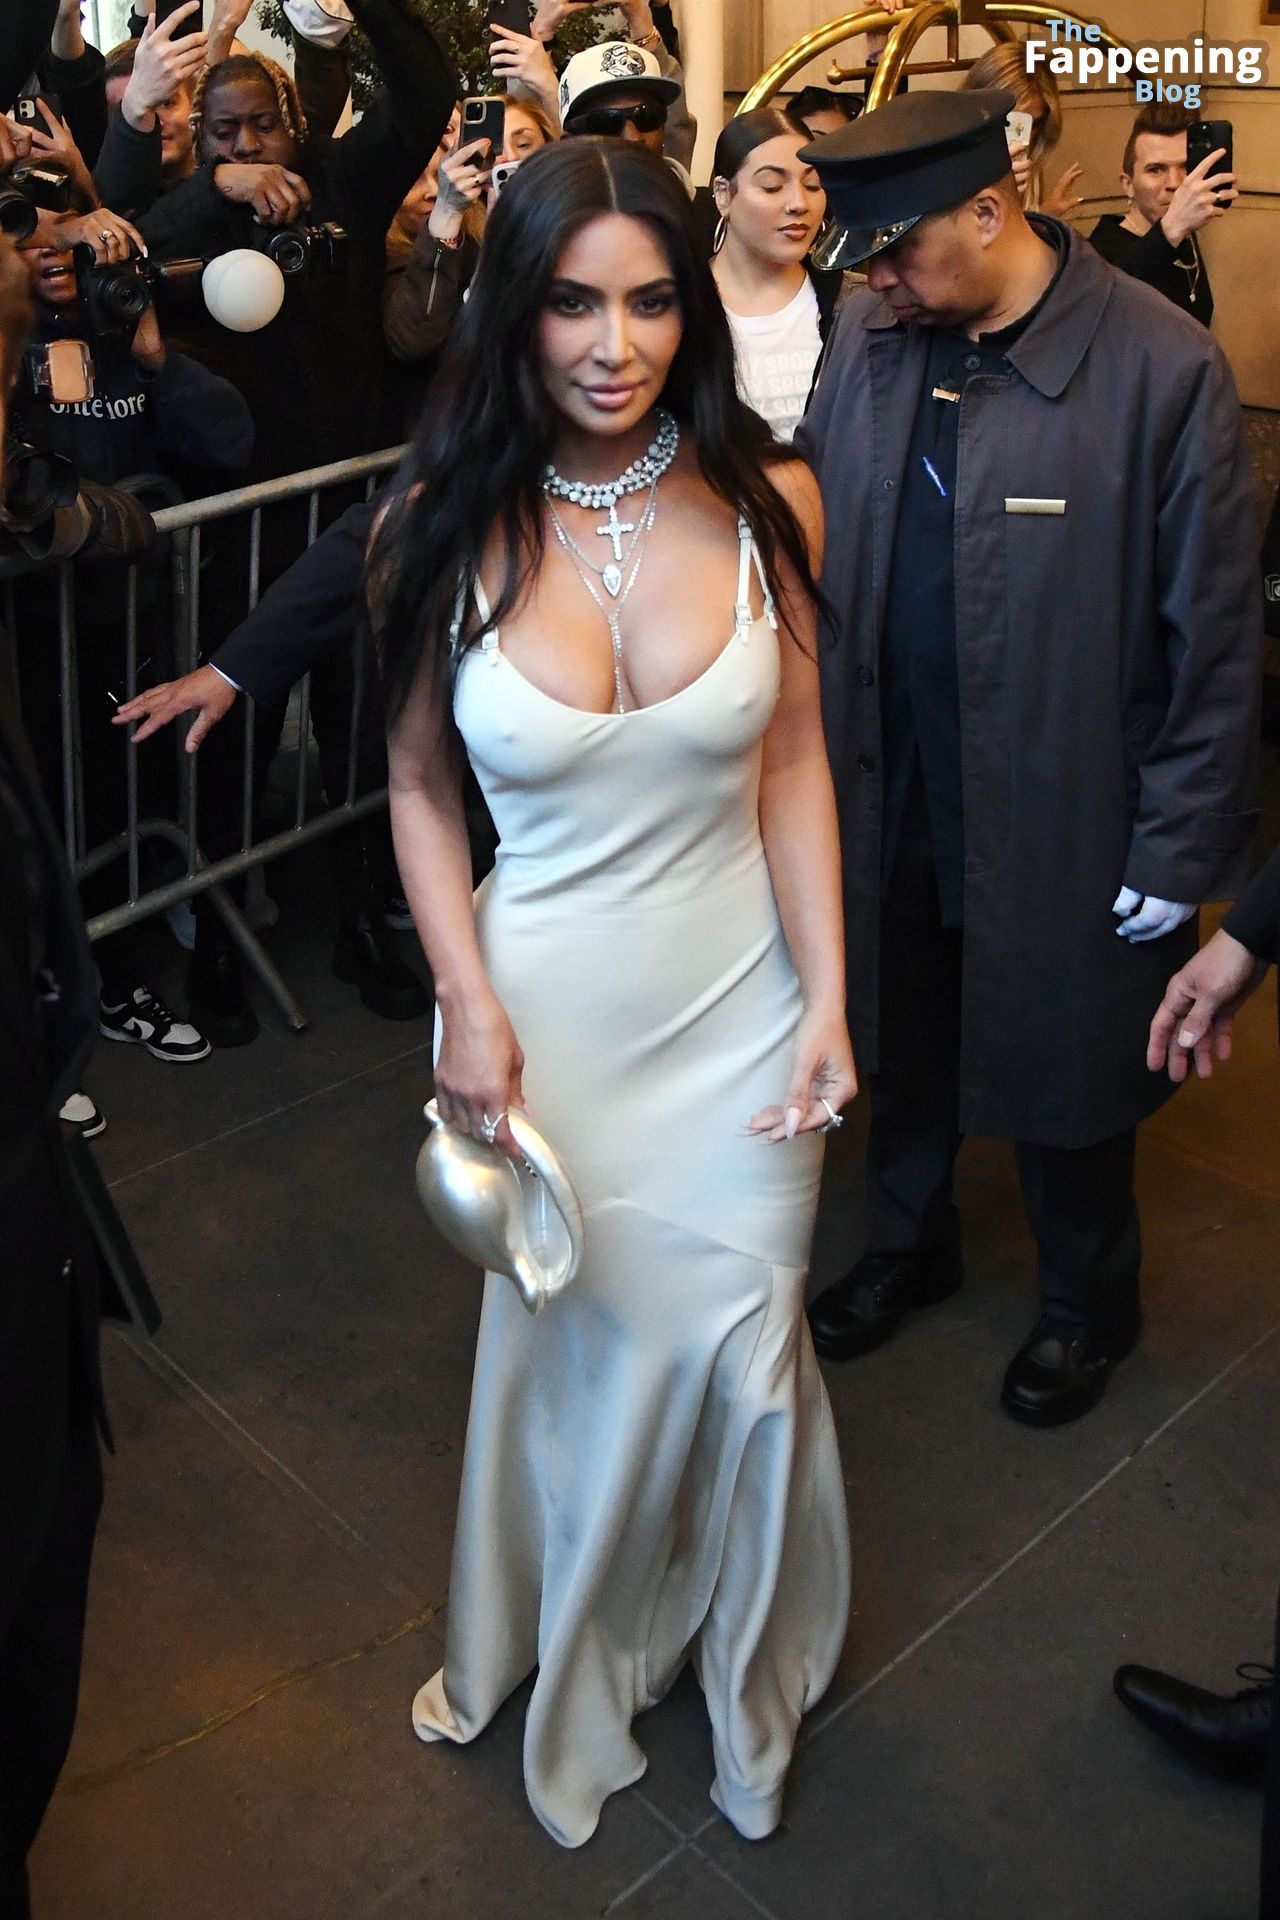 Kim-Kardashian-Sexy-The-Fappening-Blog-8-3.jpg